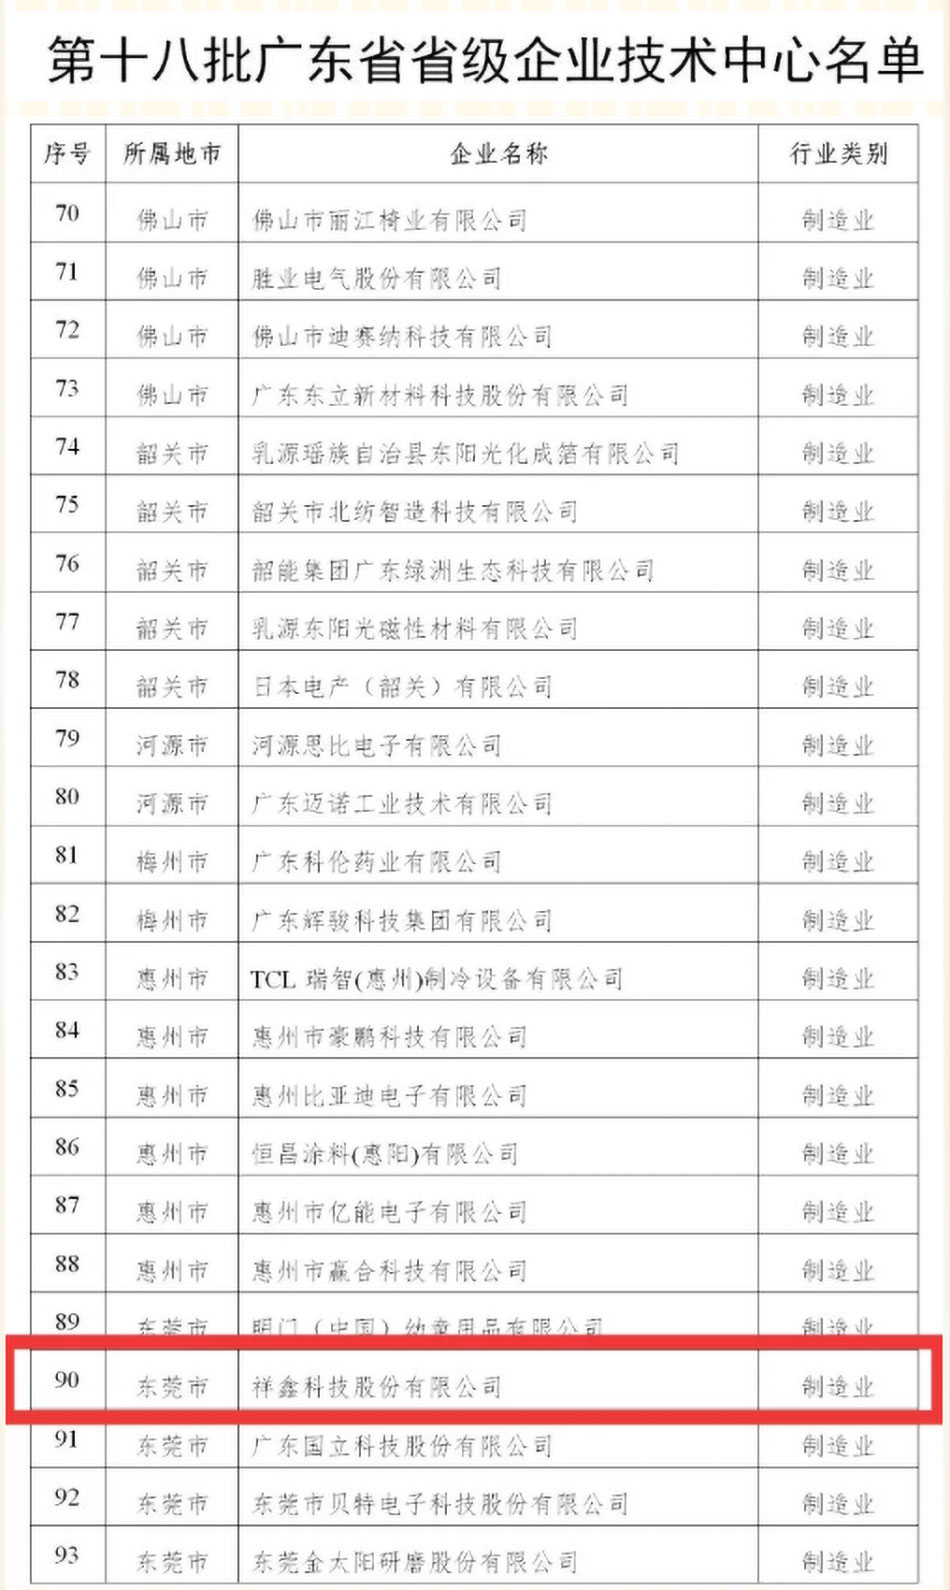 祝贺祥鑫科技被认定于第十八批广东省省级企业技术中心